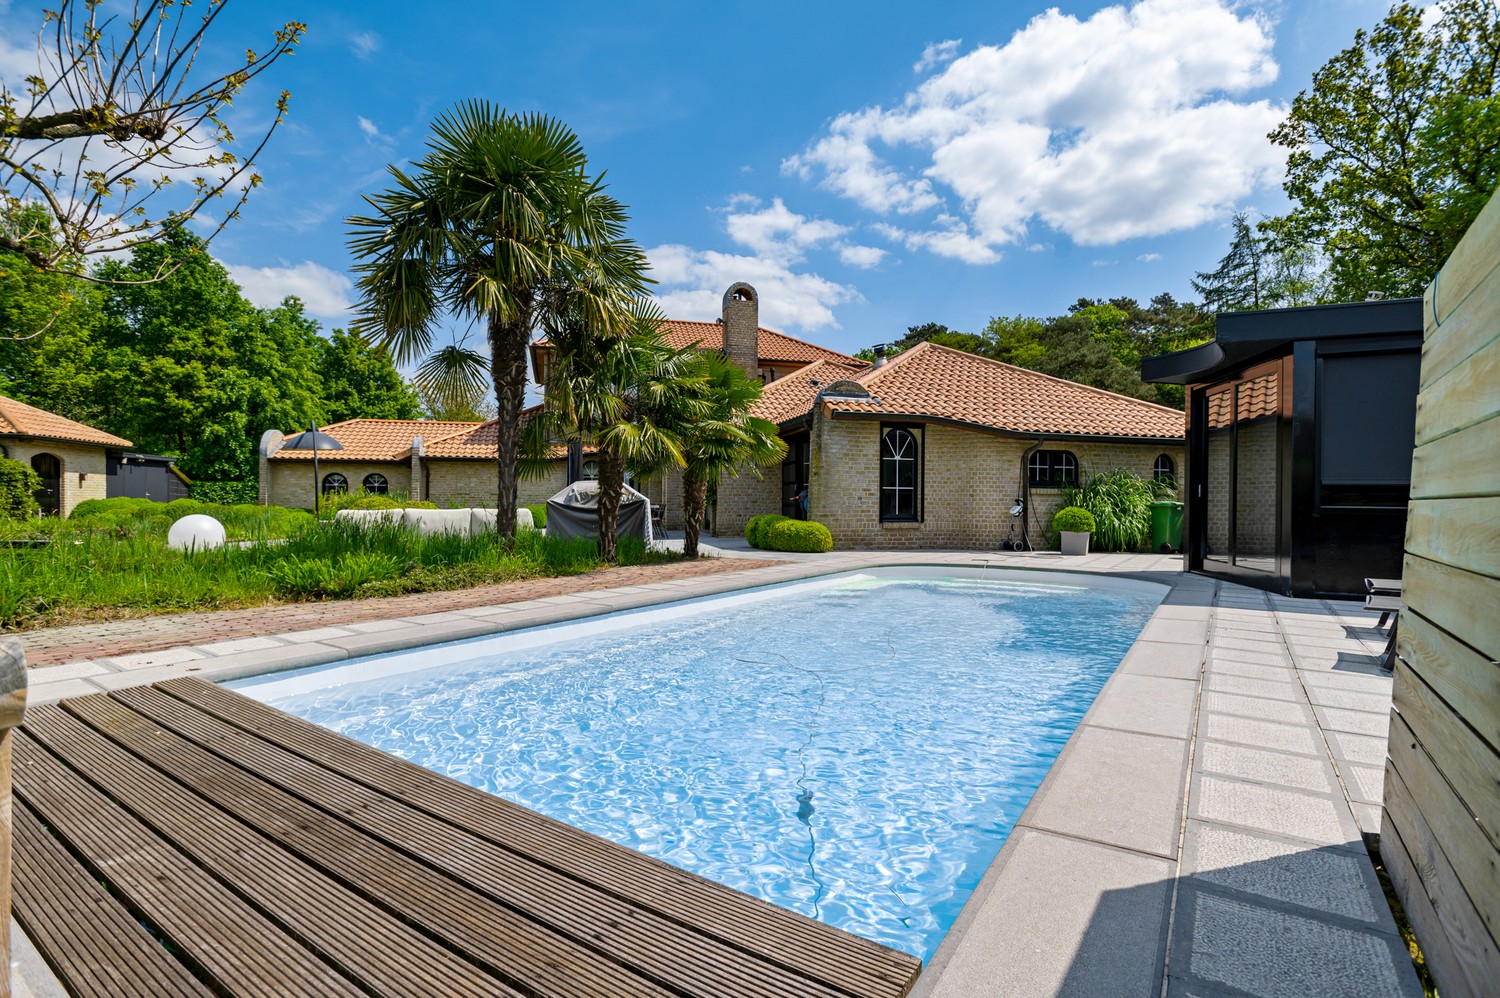 Exclusieve villa met 5 slaapkamers, verwarmd zwembad en Z-tuin in Pulle. afbeelding 26